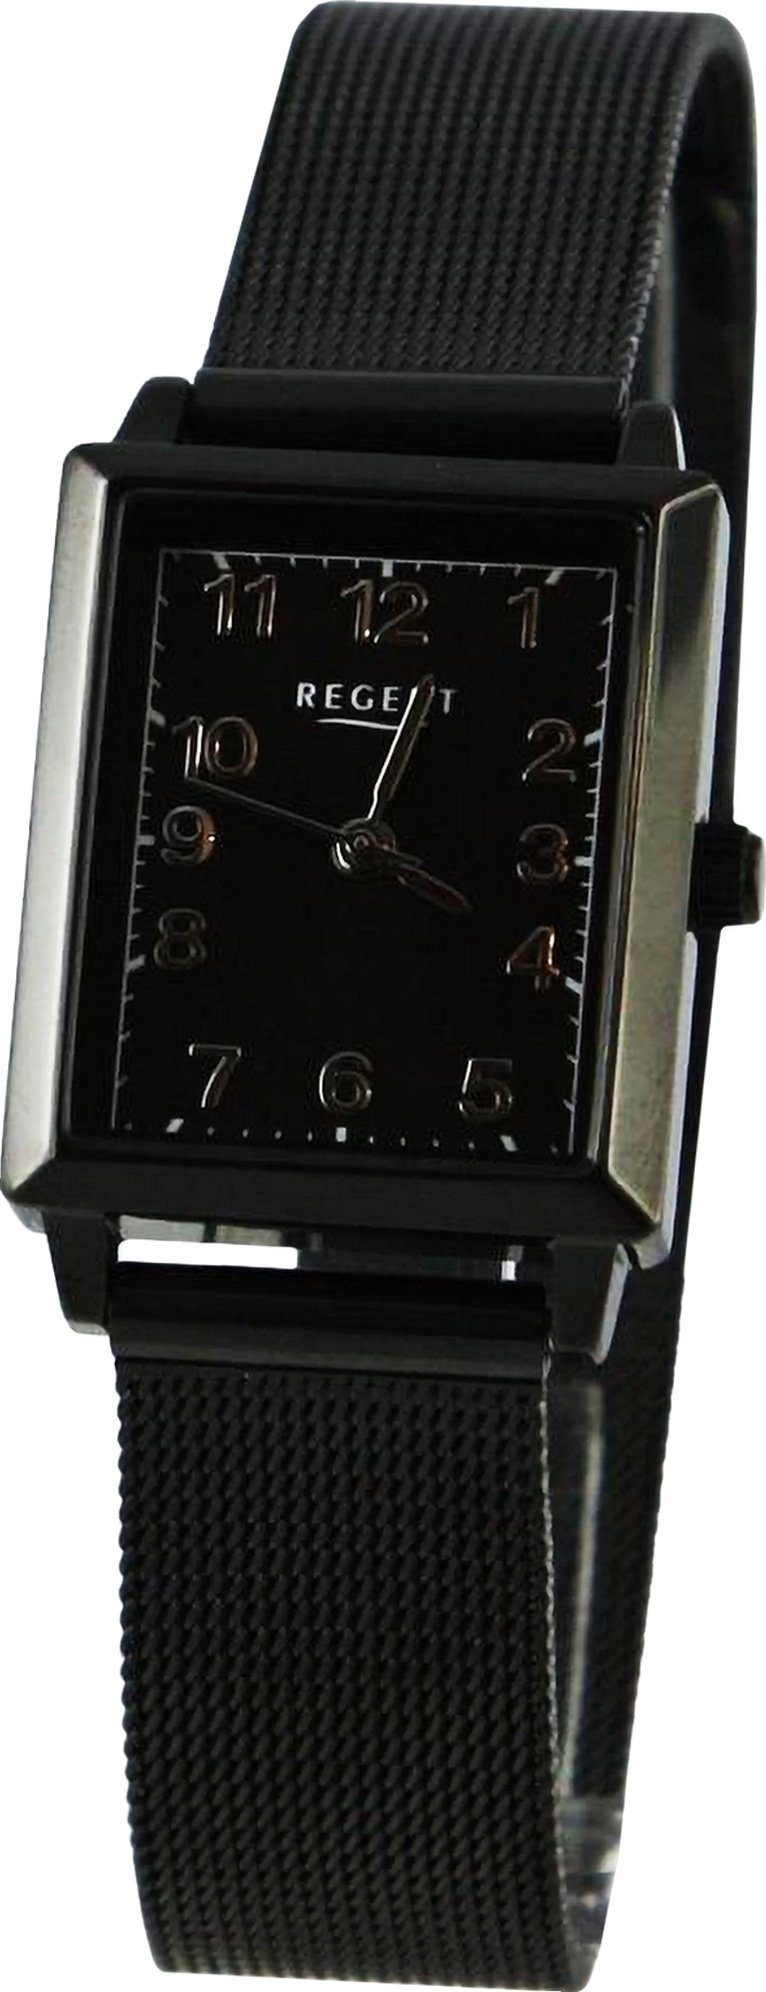 groß Damen Regent Metallarmband, Quarzuhr (ca. rund, Armbanduhr extra 22x26mm), Regent Damen Armbanduhr Analog, Uhrzeit